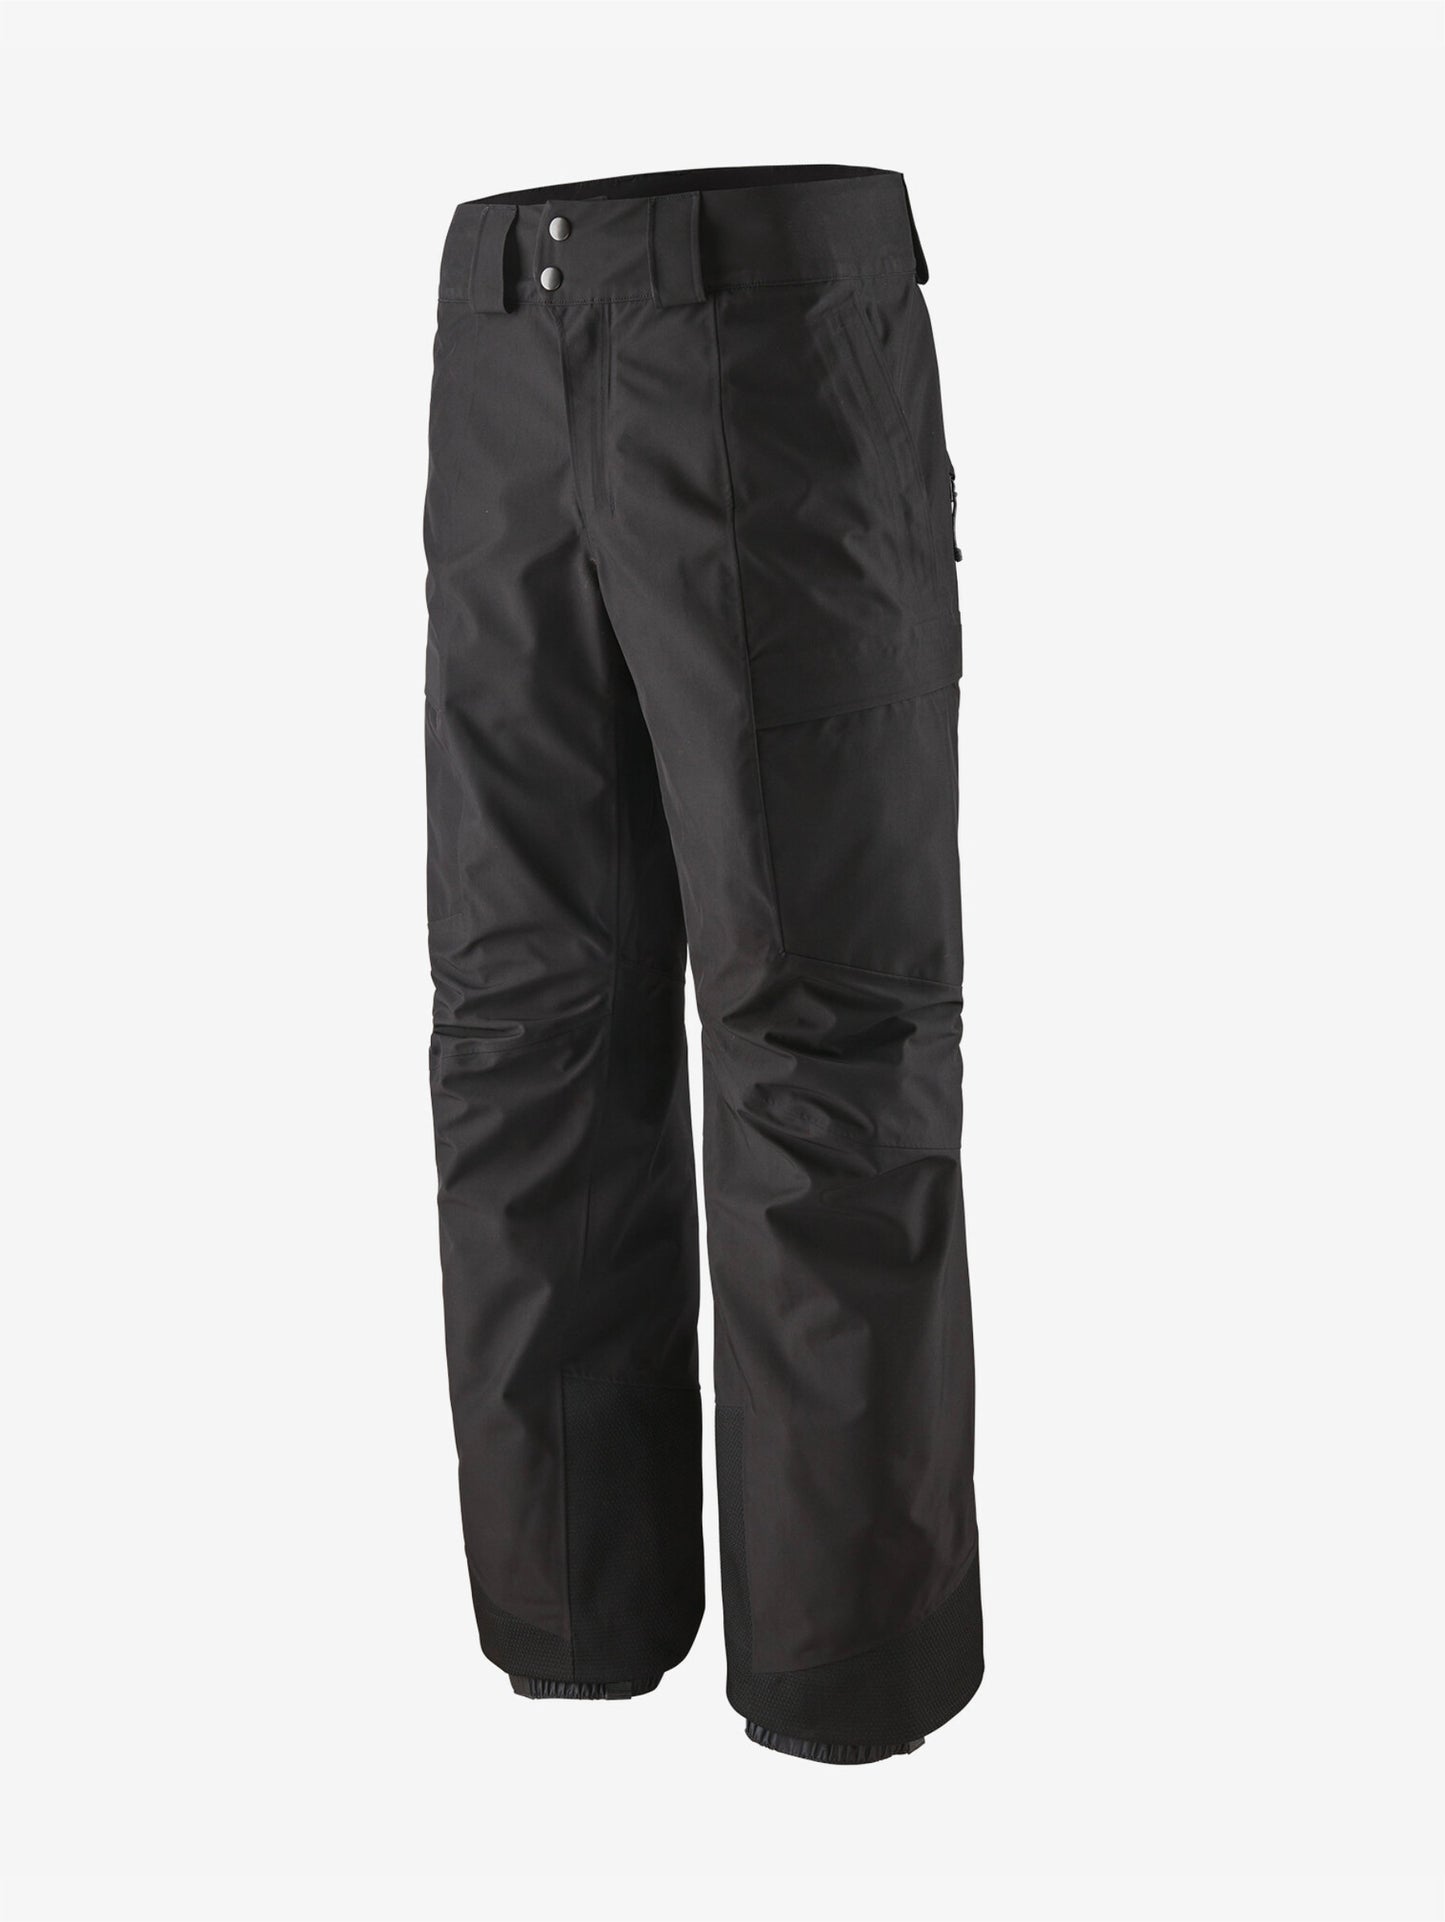 Men's Storm Shift Pants - Regular black pantaloni sci uomo